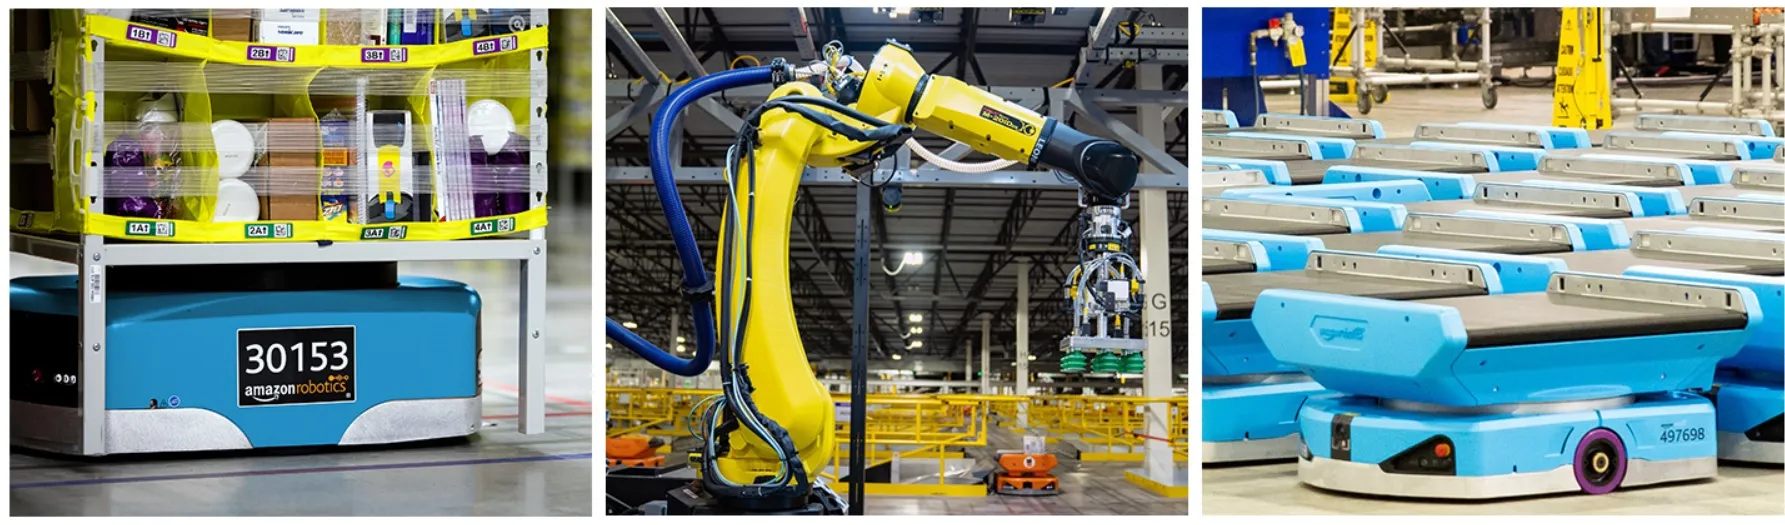 Robots y automatización en Amazon